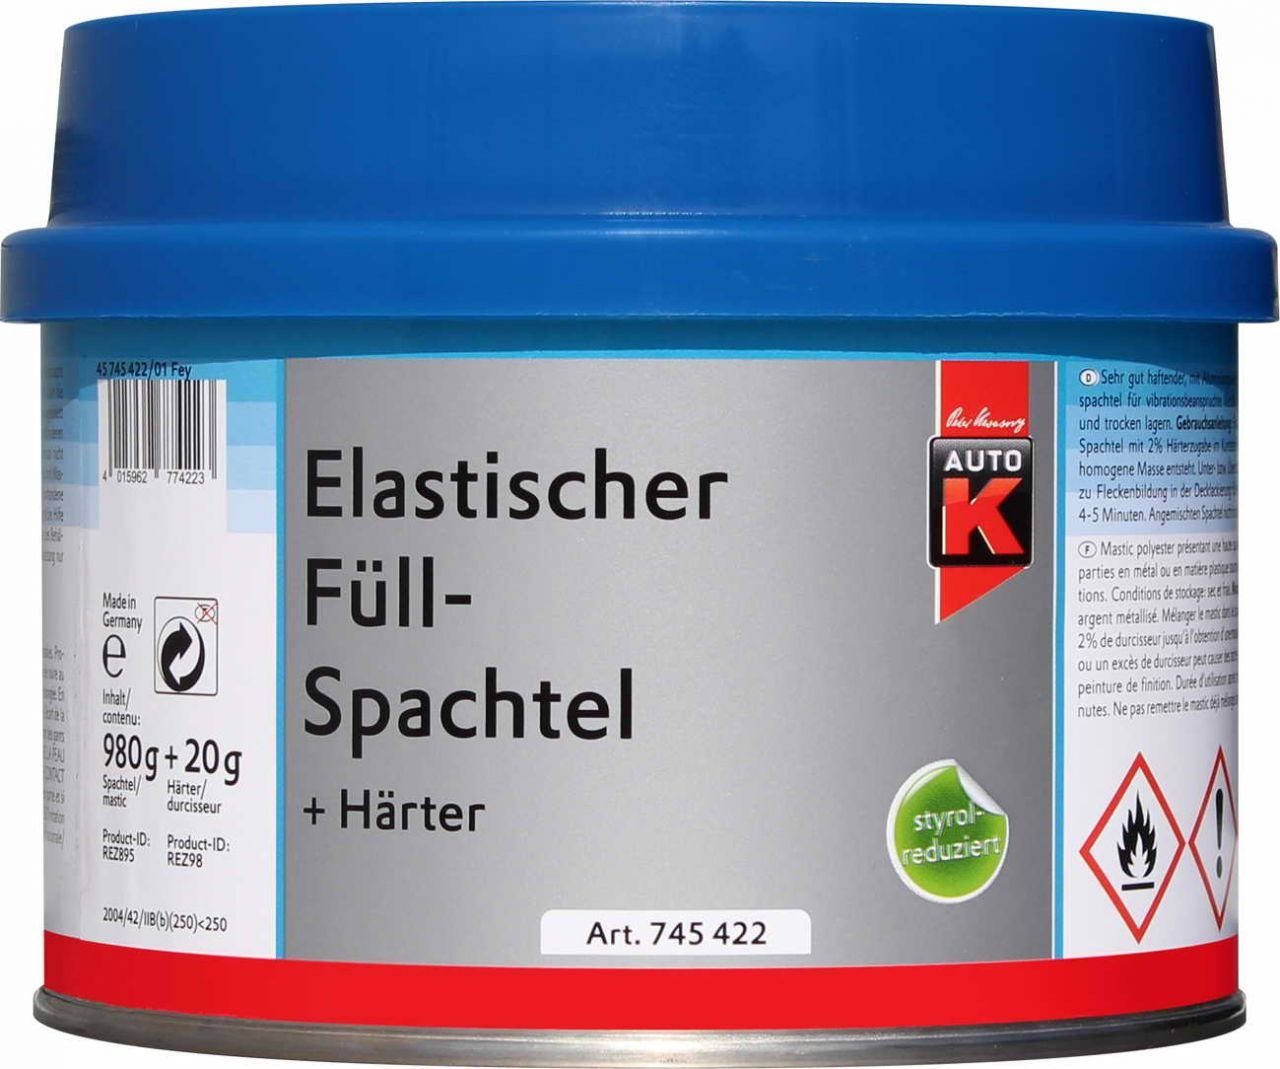 Auto-K Breitspachtel Auto-K Elastischer Füllspachtel + Härter 1000g